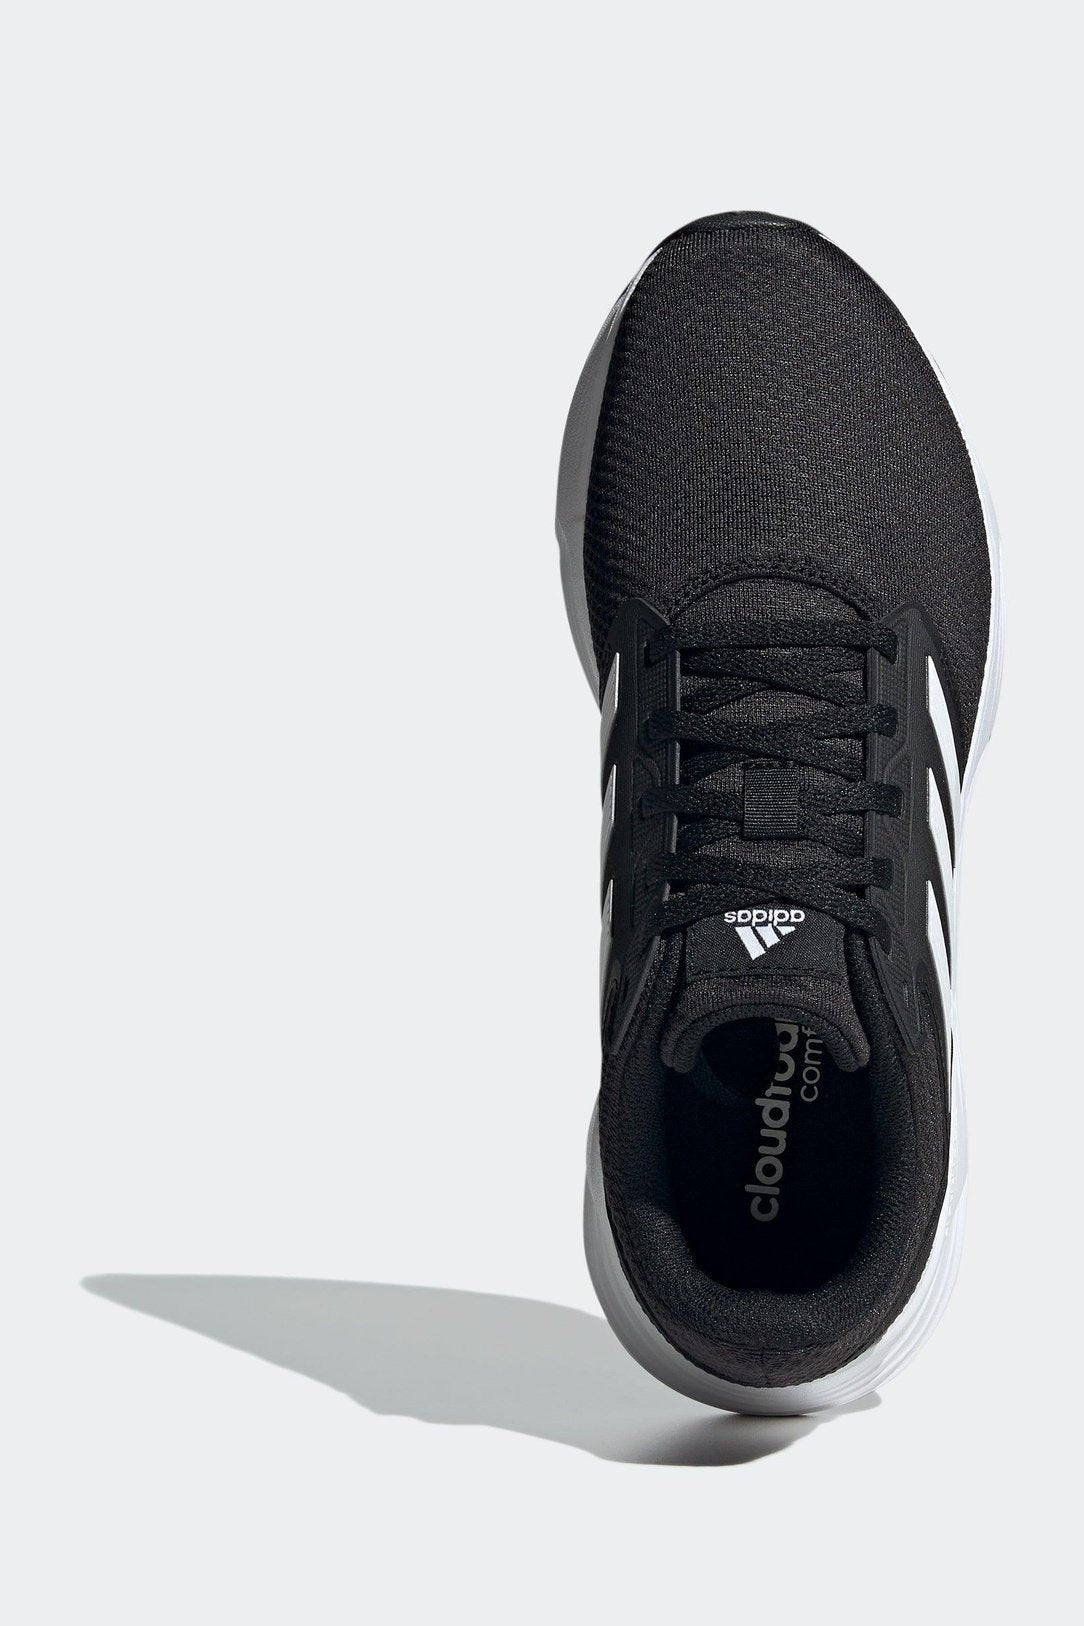 נעלי ריצה לגבר GALAXY 6 בצבע שחור ולבן - MASHBIR//365